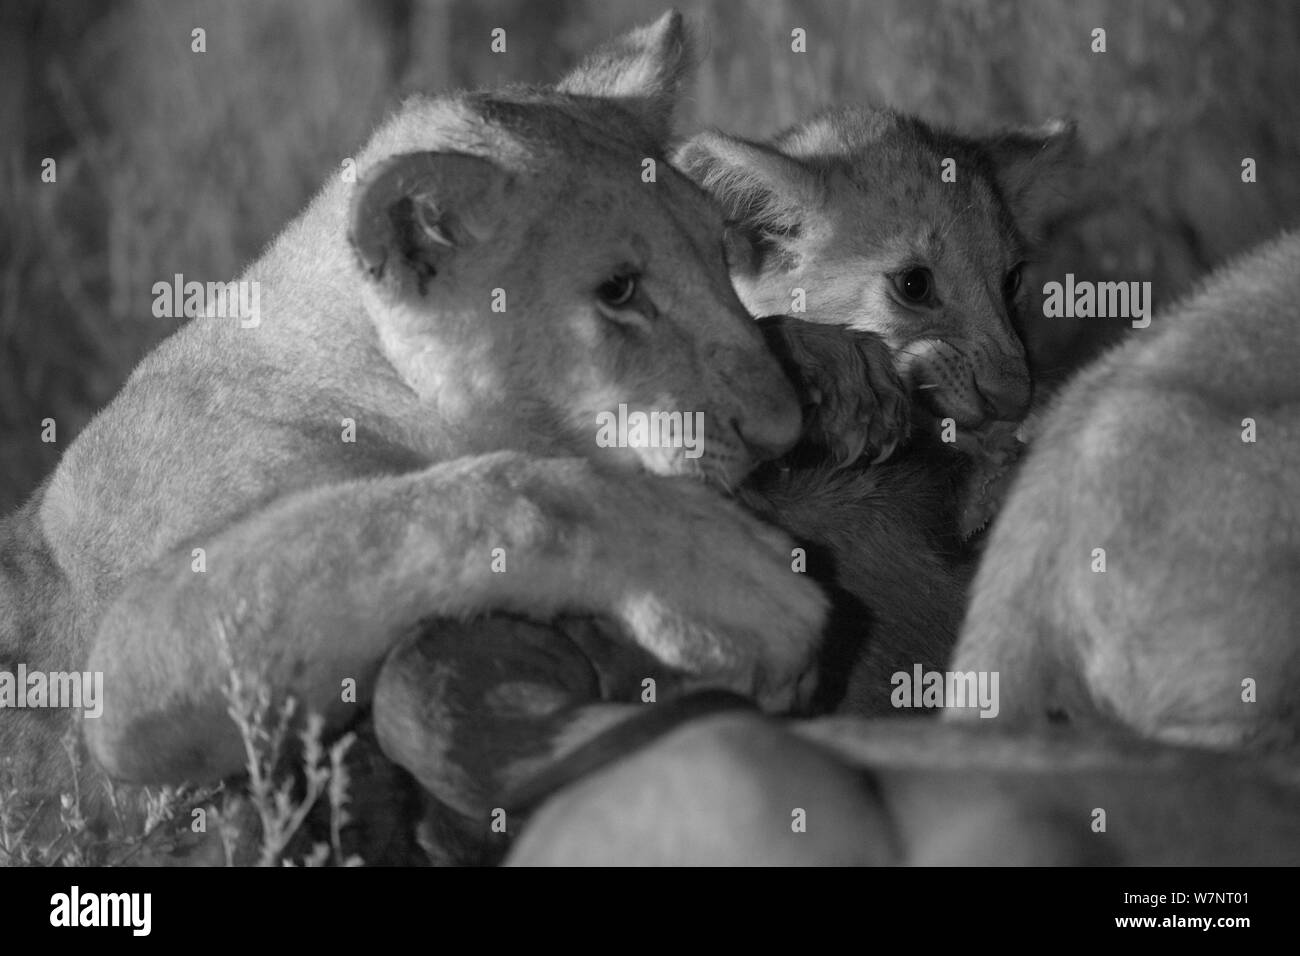 Marsh pride lions (Panthera leo) qui se nourrit d'une Wildebeast la nuit, Masai Mara, Kenya, prise avec caméra à infrarouge, Septembre Banque D'Images